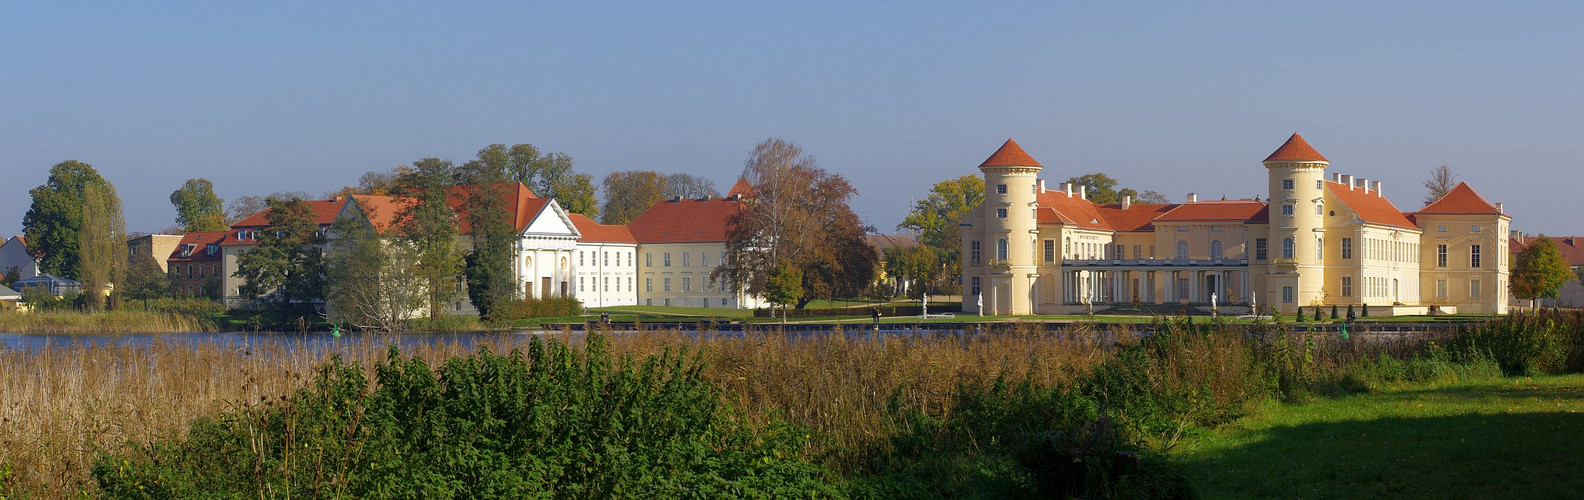 Sommerliches Schloss Rheinsberg